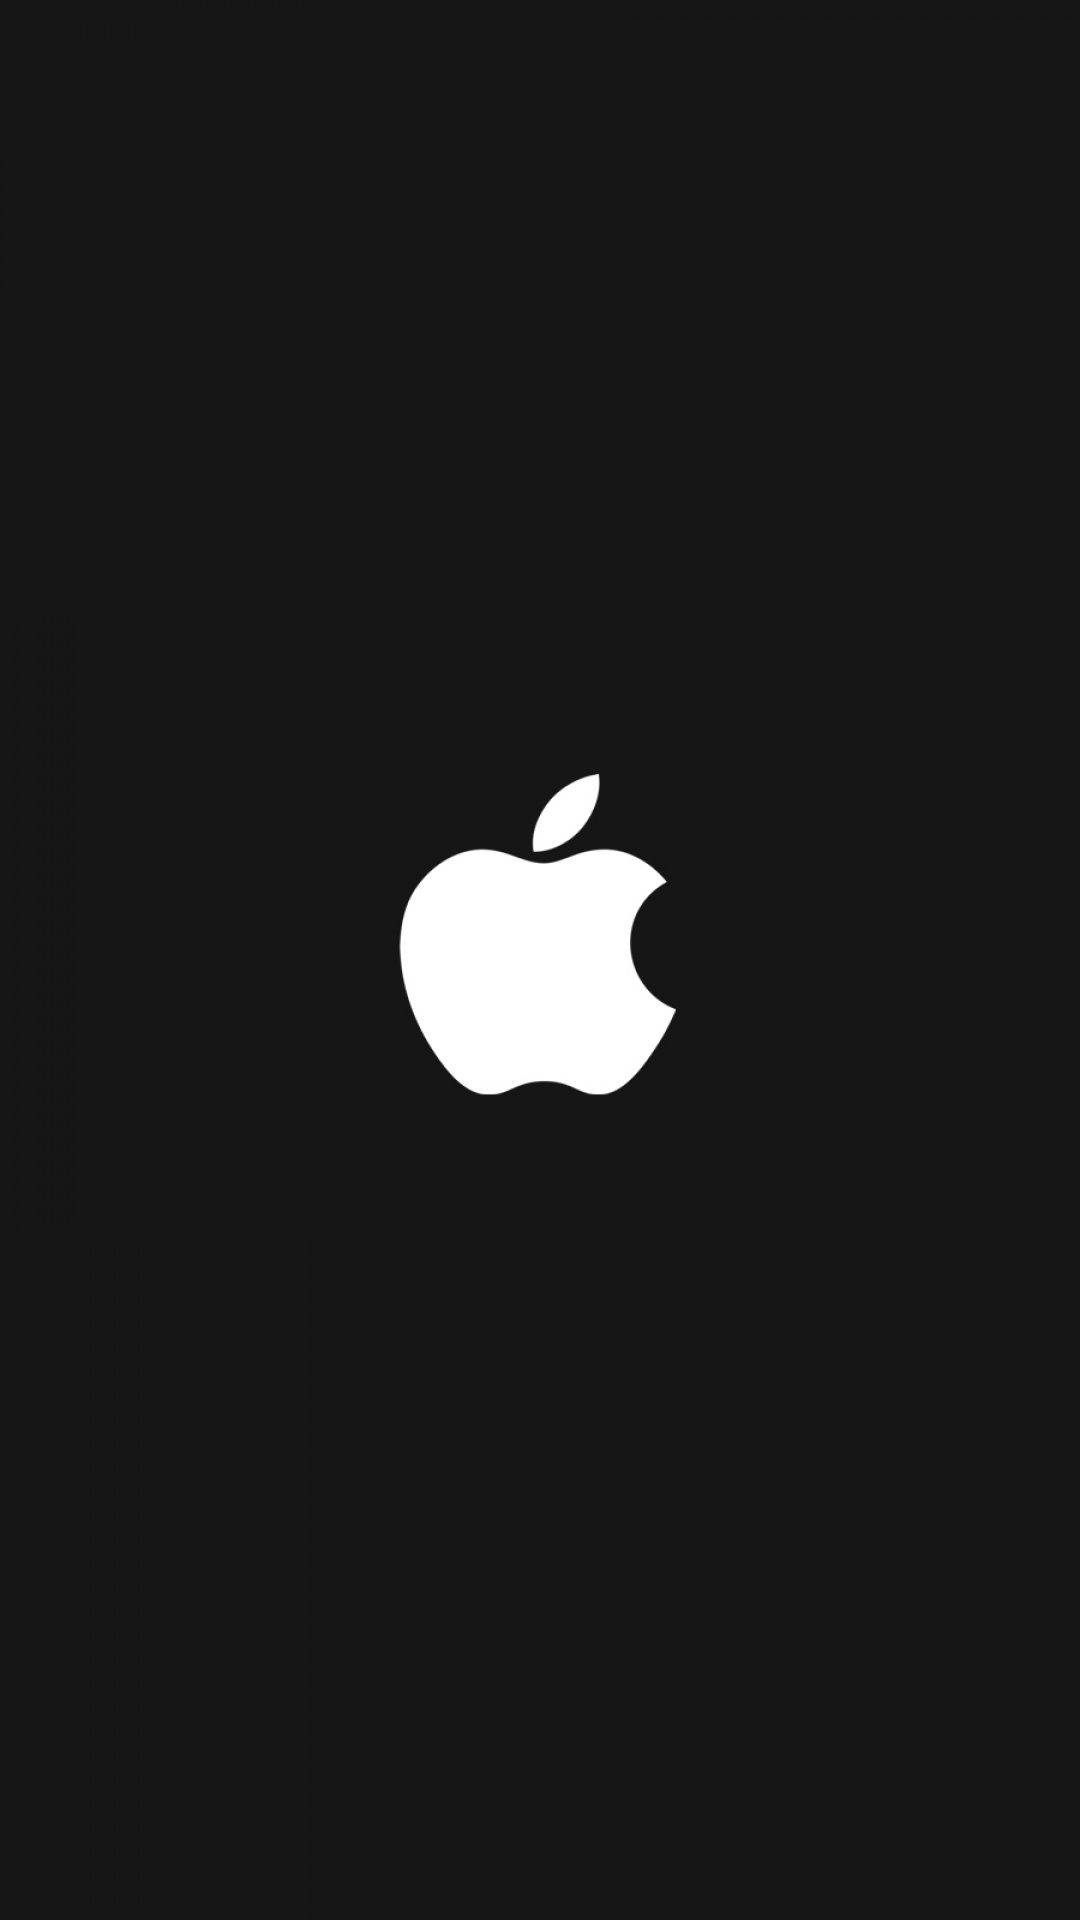 White Apple Logo Iphone Background